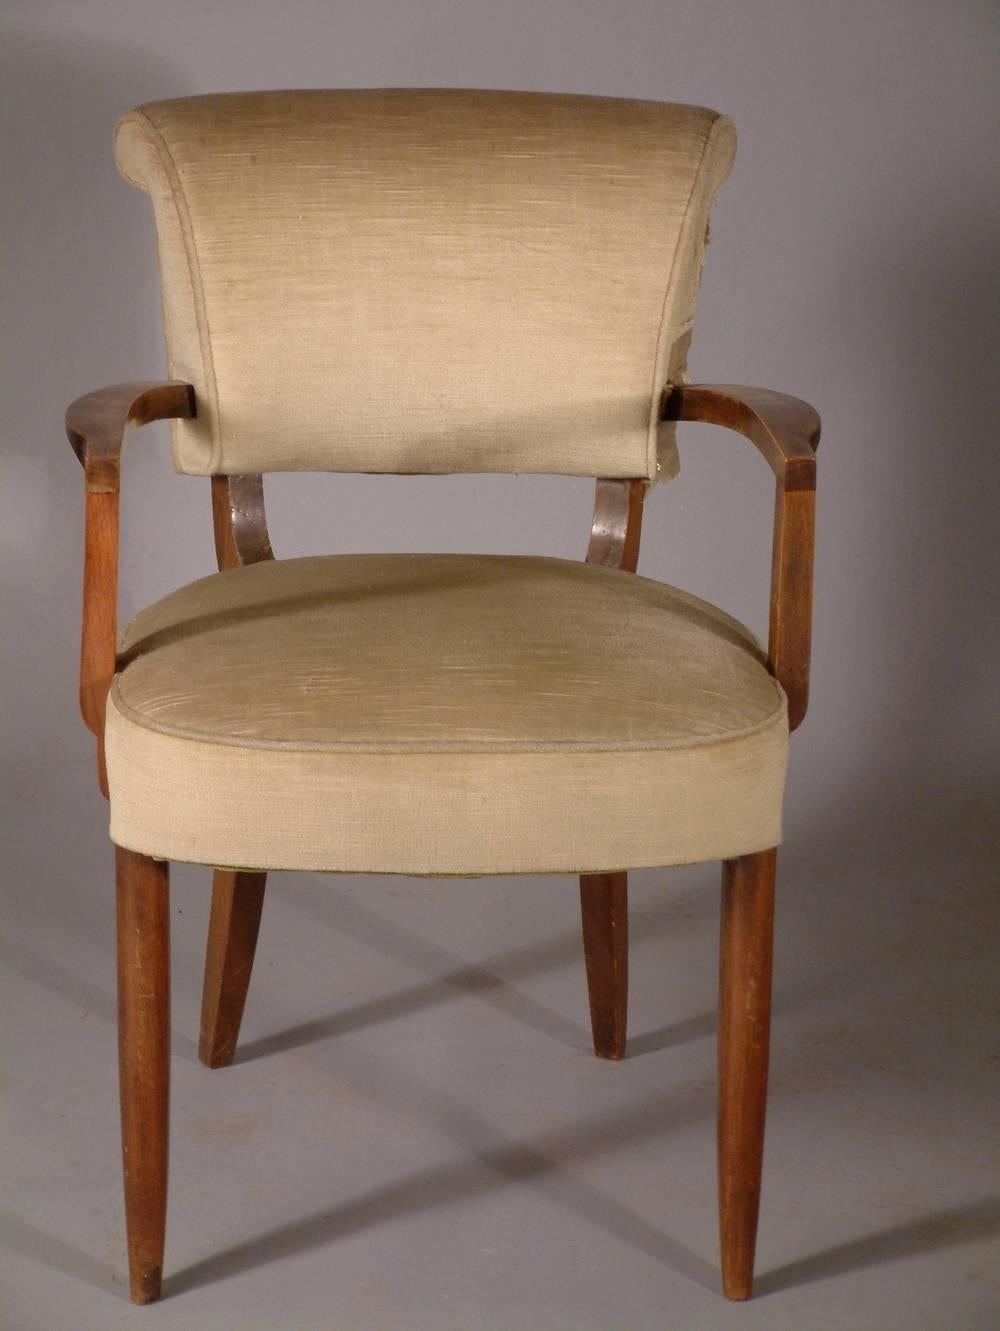 Französisches Sesselpaar im Art déco-Stil von Jules Leleu, um 1935.

Bitte beachten Sie, dass diese Stühle auf den Fotos unrestauriert sind.

Vier verfügbar. Der Preis gilt pro Paar.

JULES-EMILE LELEU

(1883-1961)

Der französische Bildhauer und